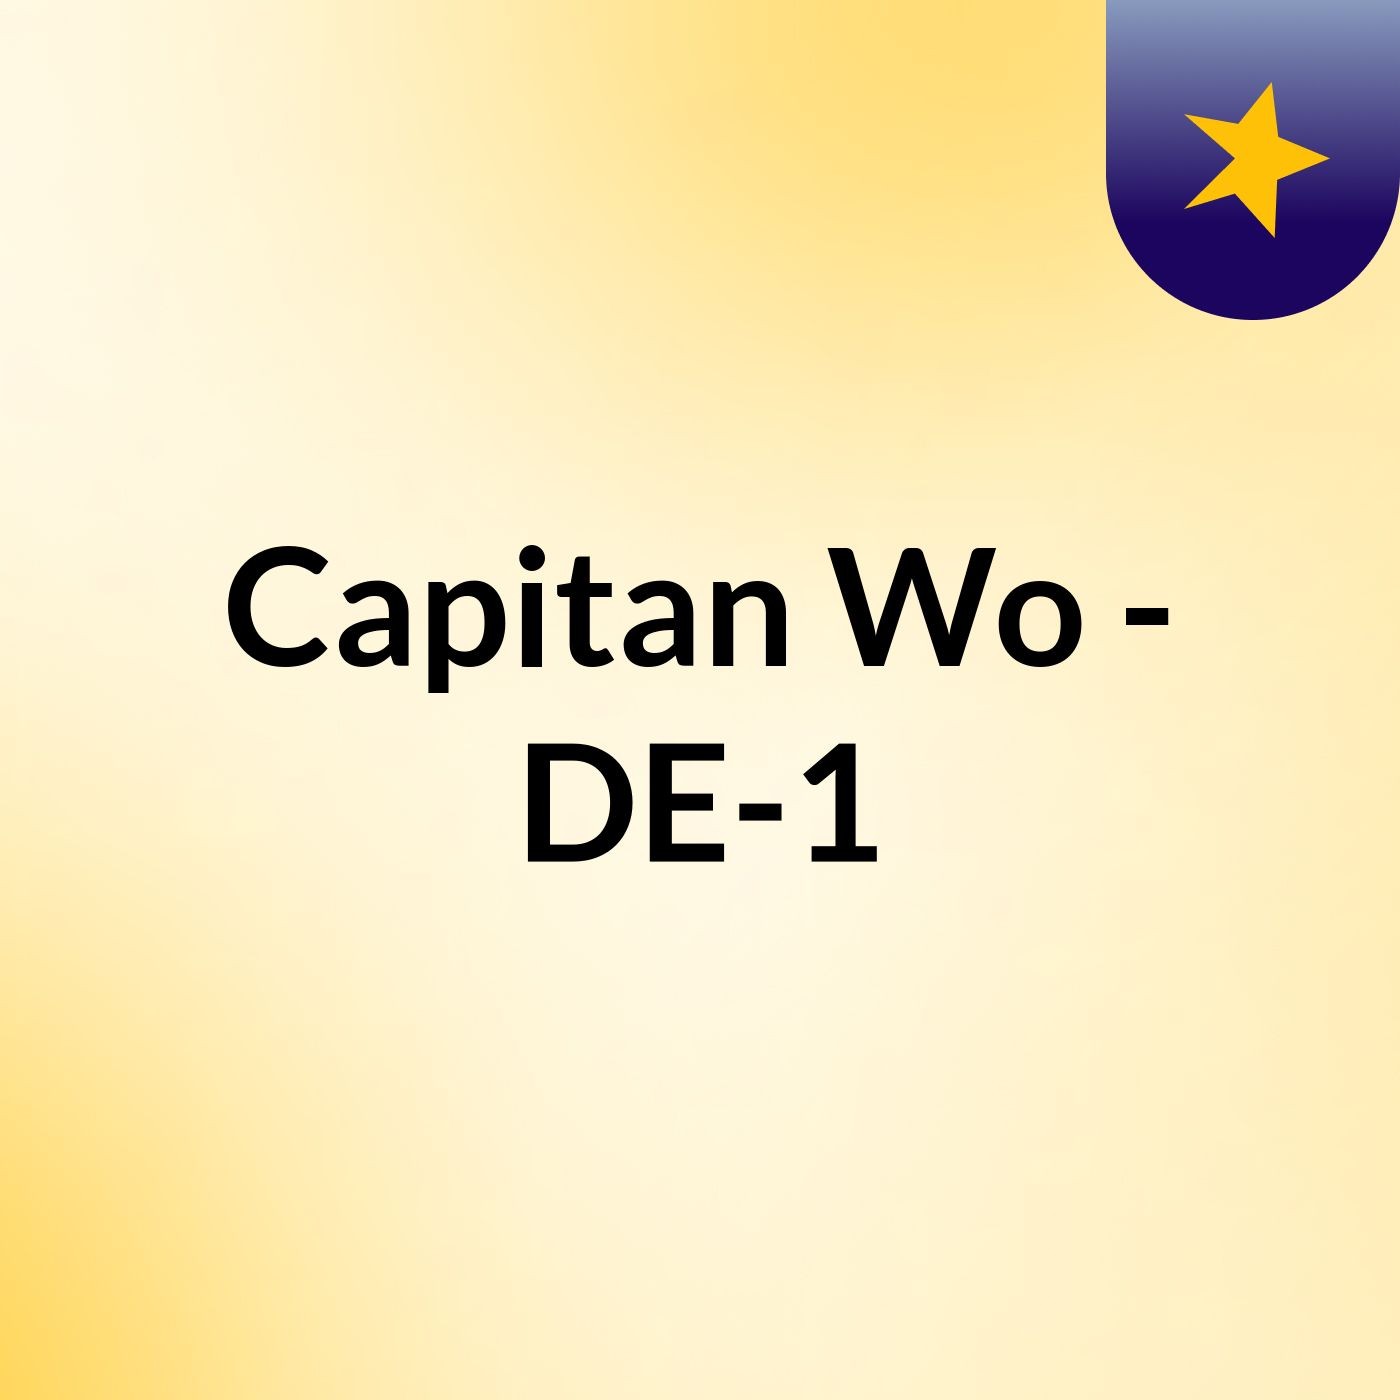 Capitan Wo - DE-1